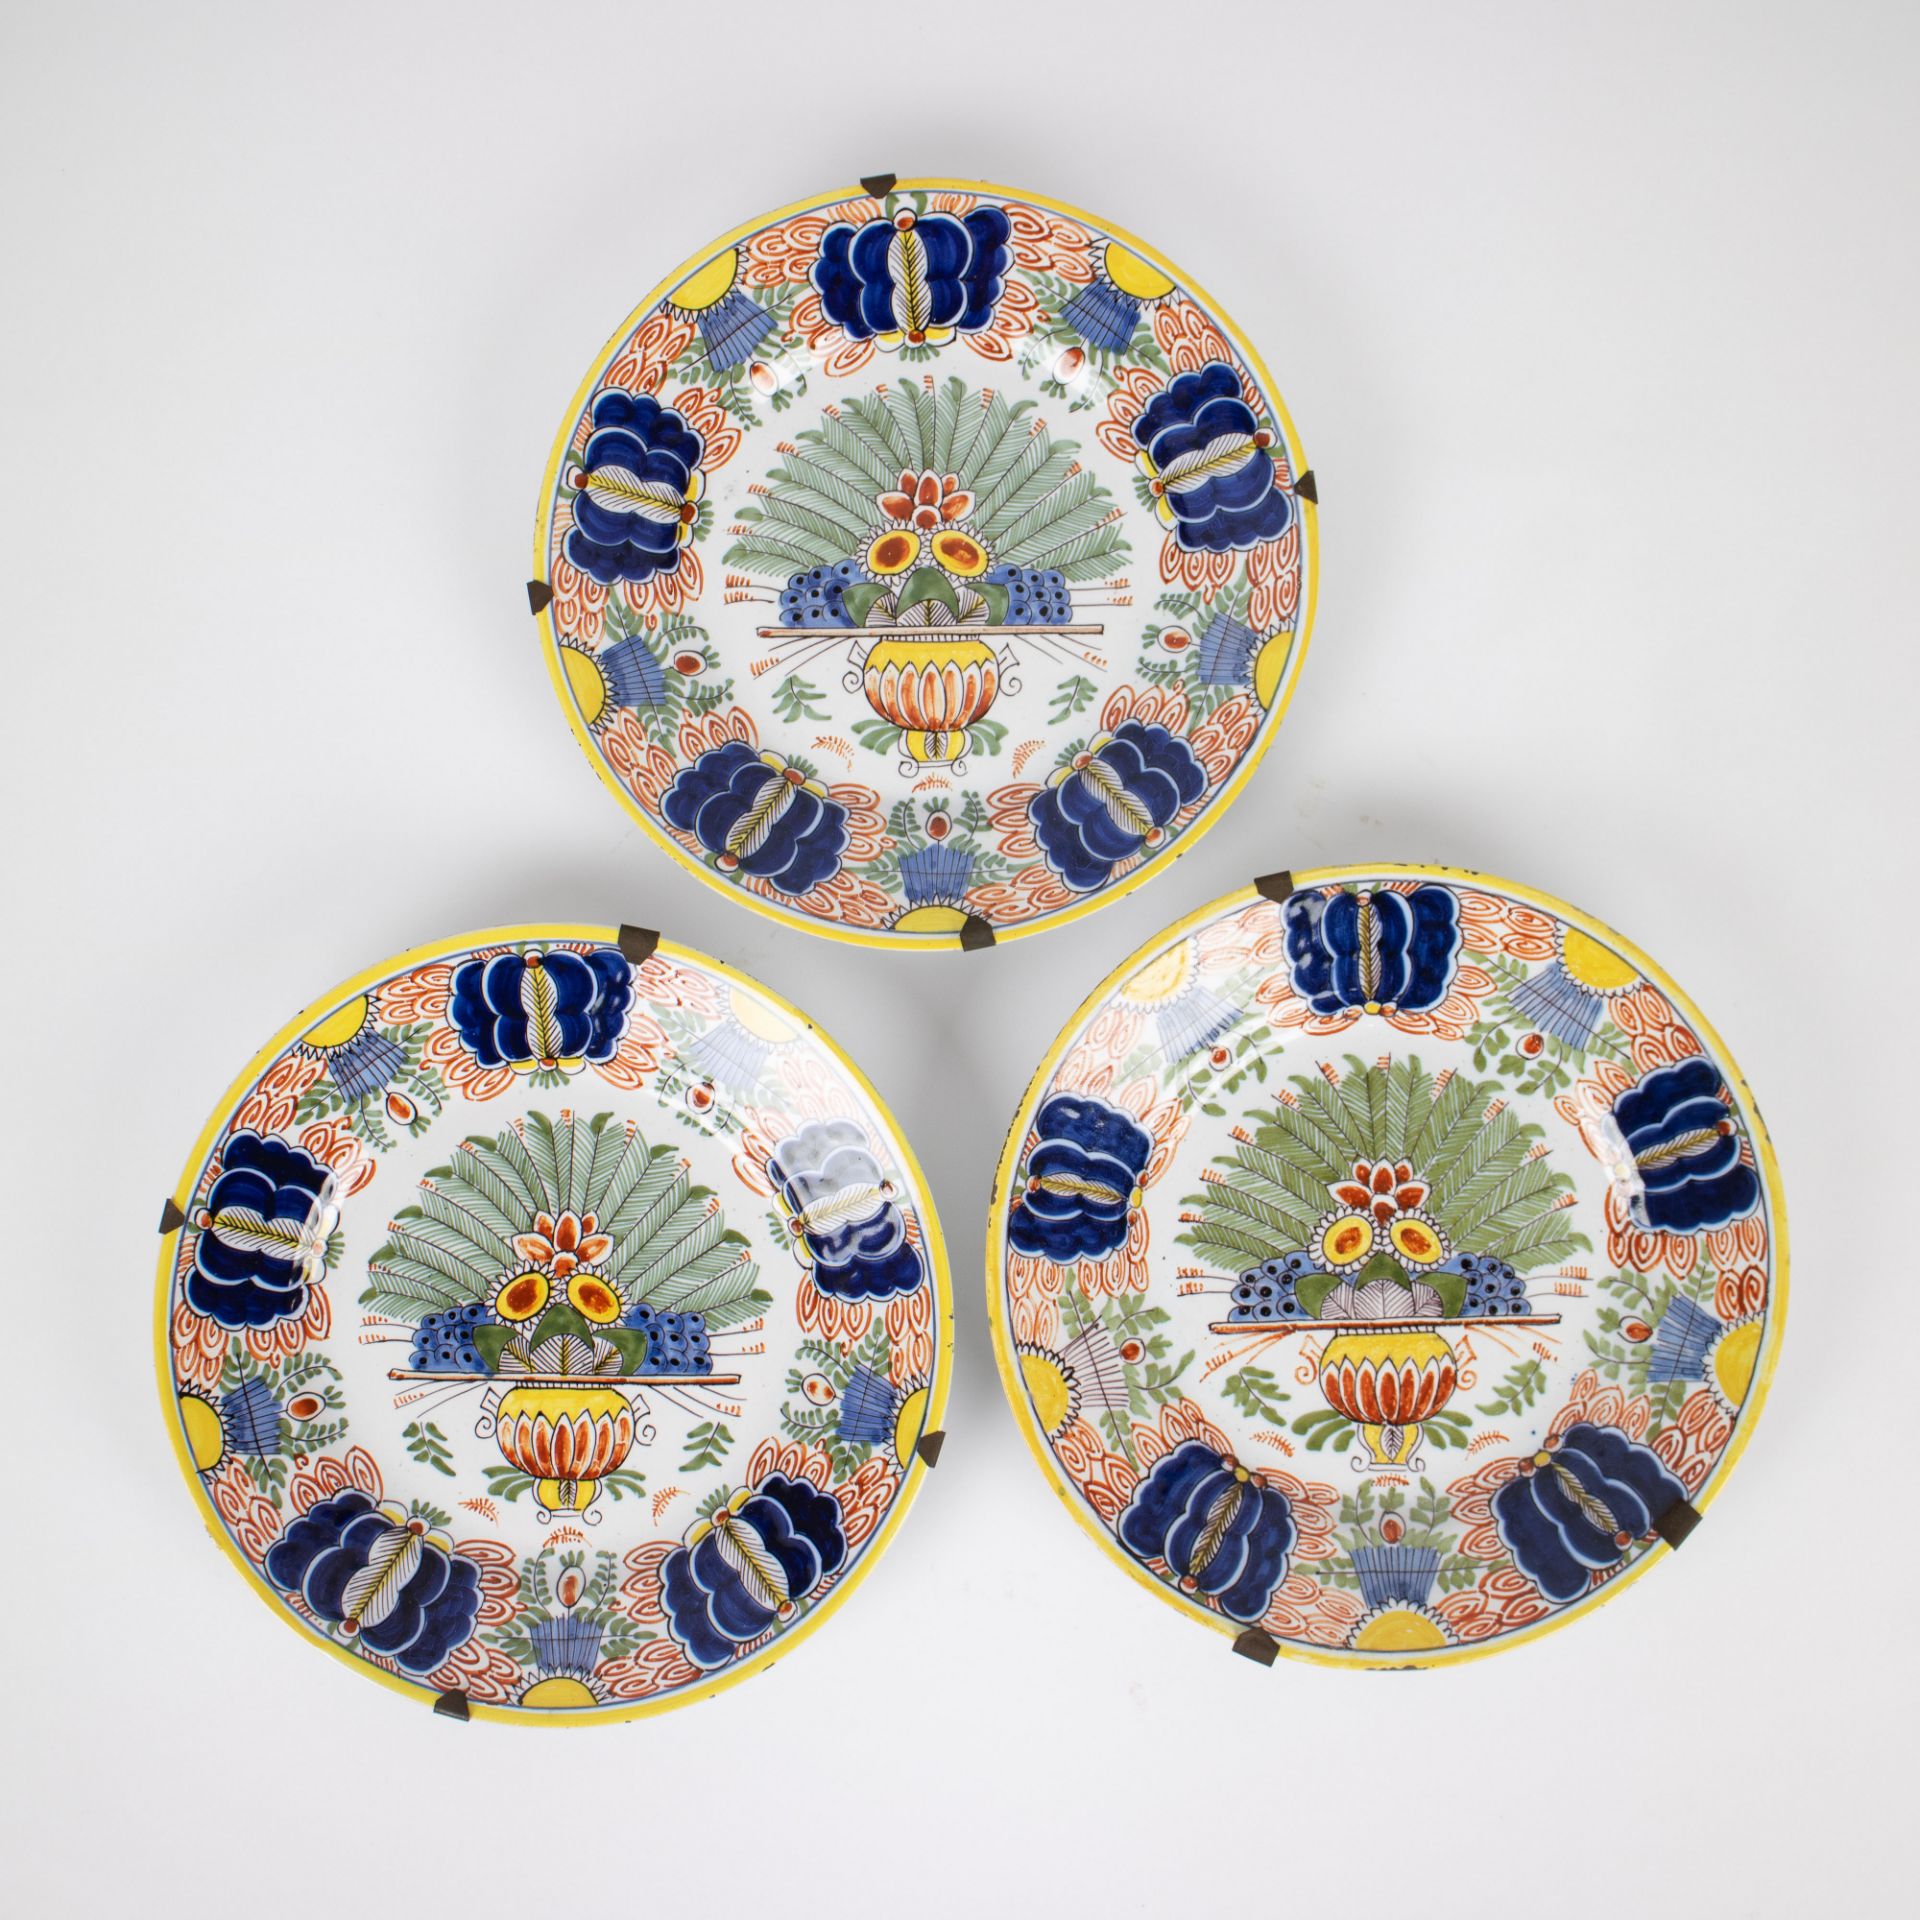 3 polychrome Delft plates